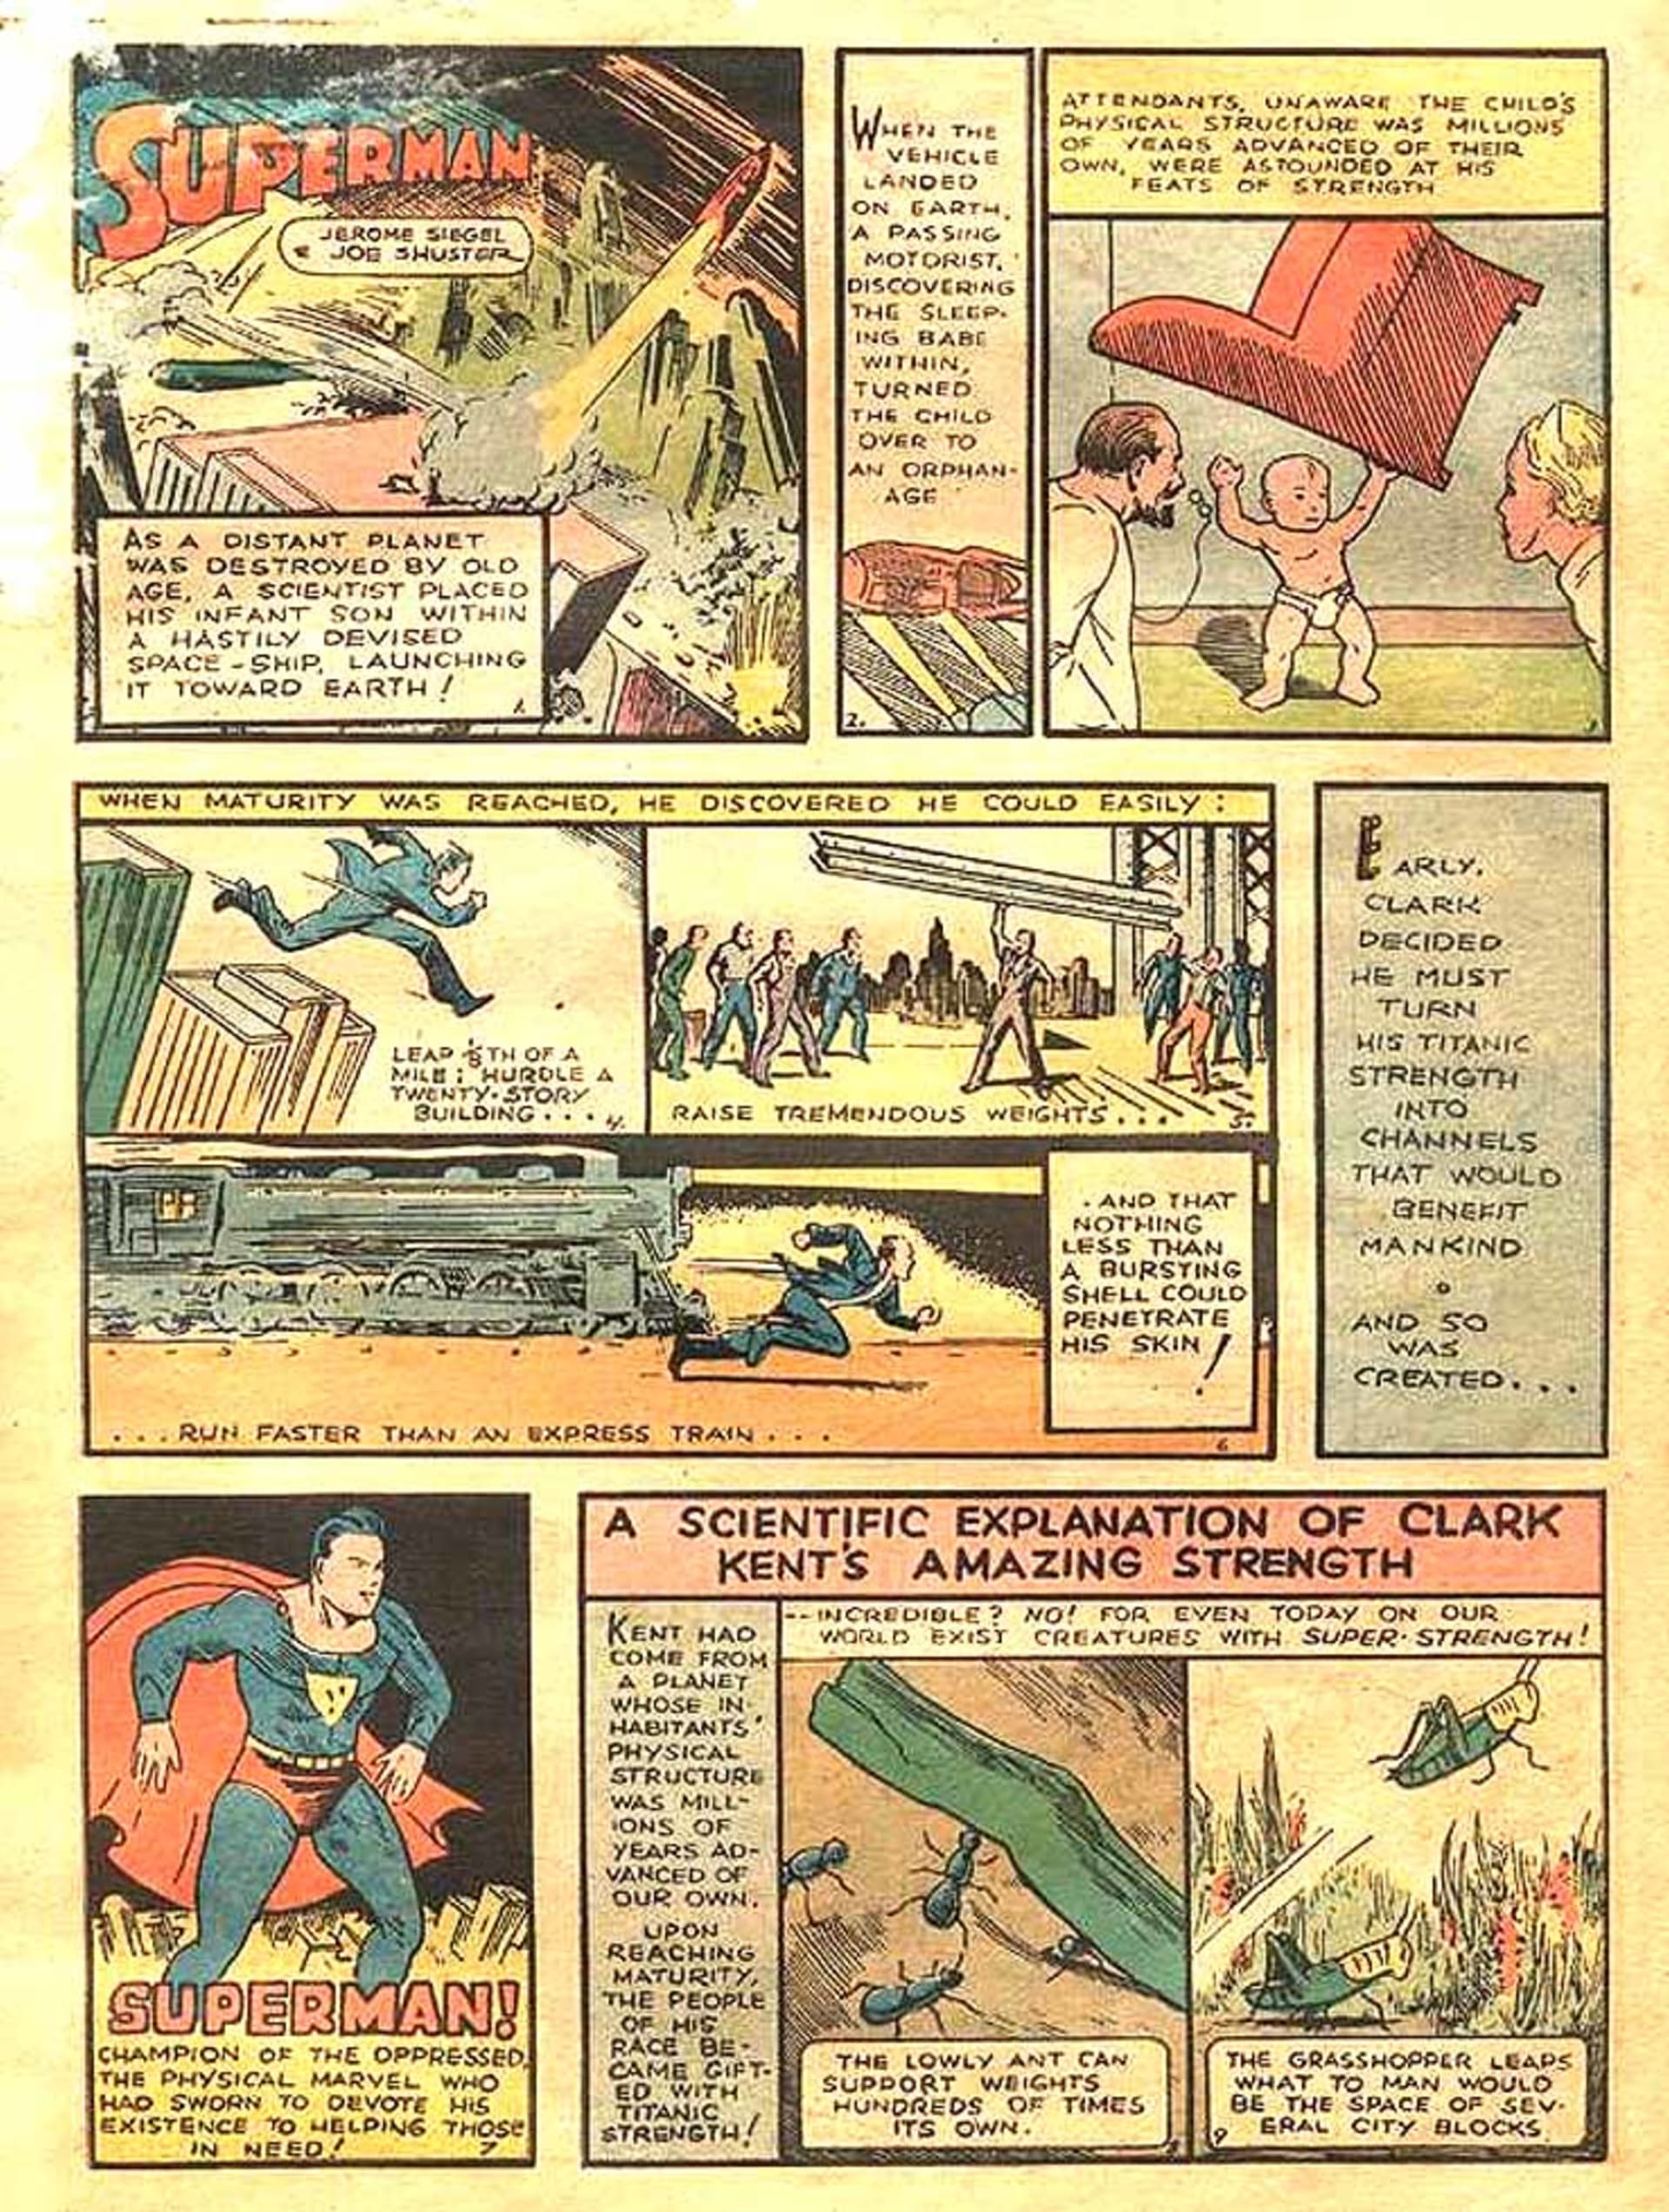 Zlomový komiks Action Comic No. 1 představil postavu Supermana